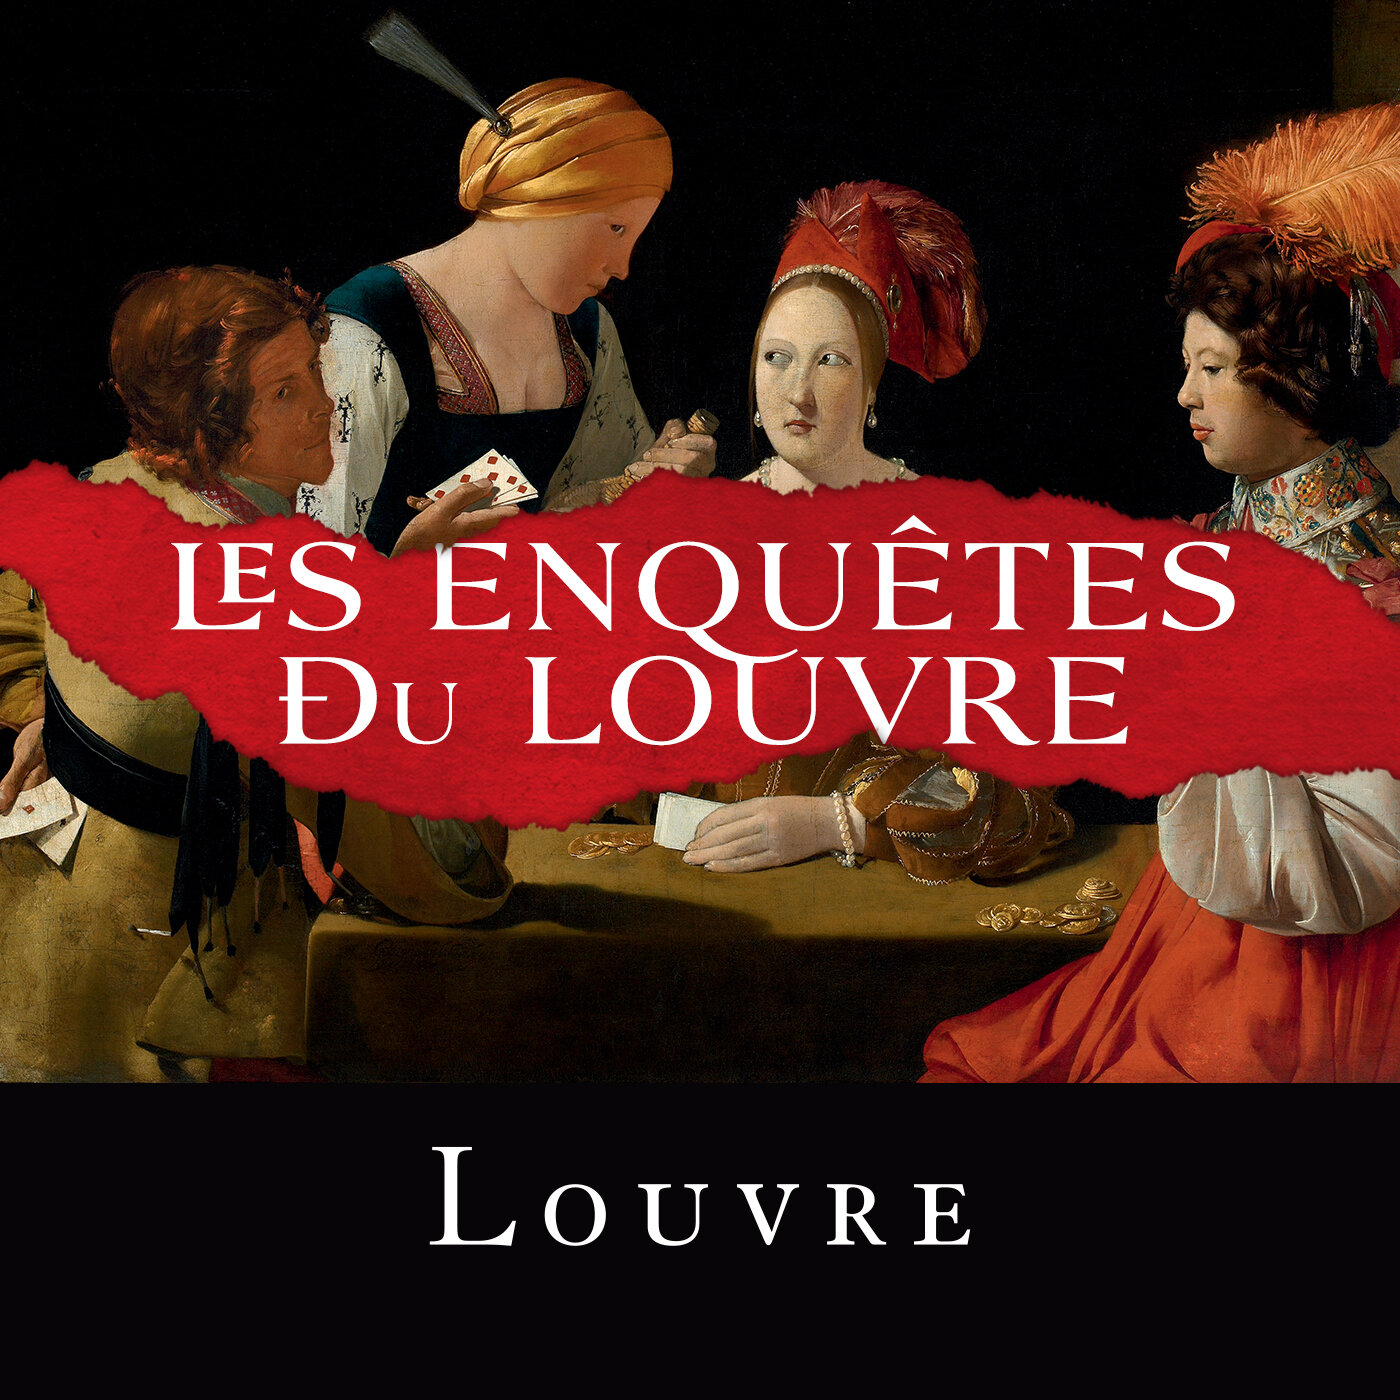 Les enquêtes du Louvre, Martin Quenehen, 22mins